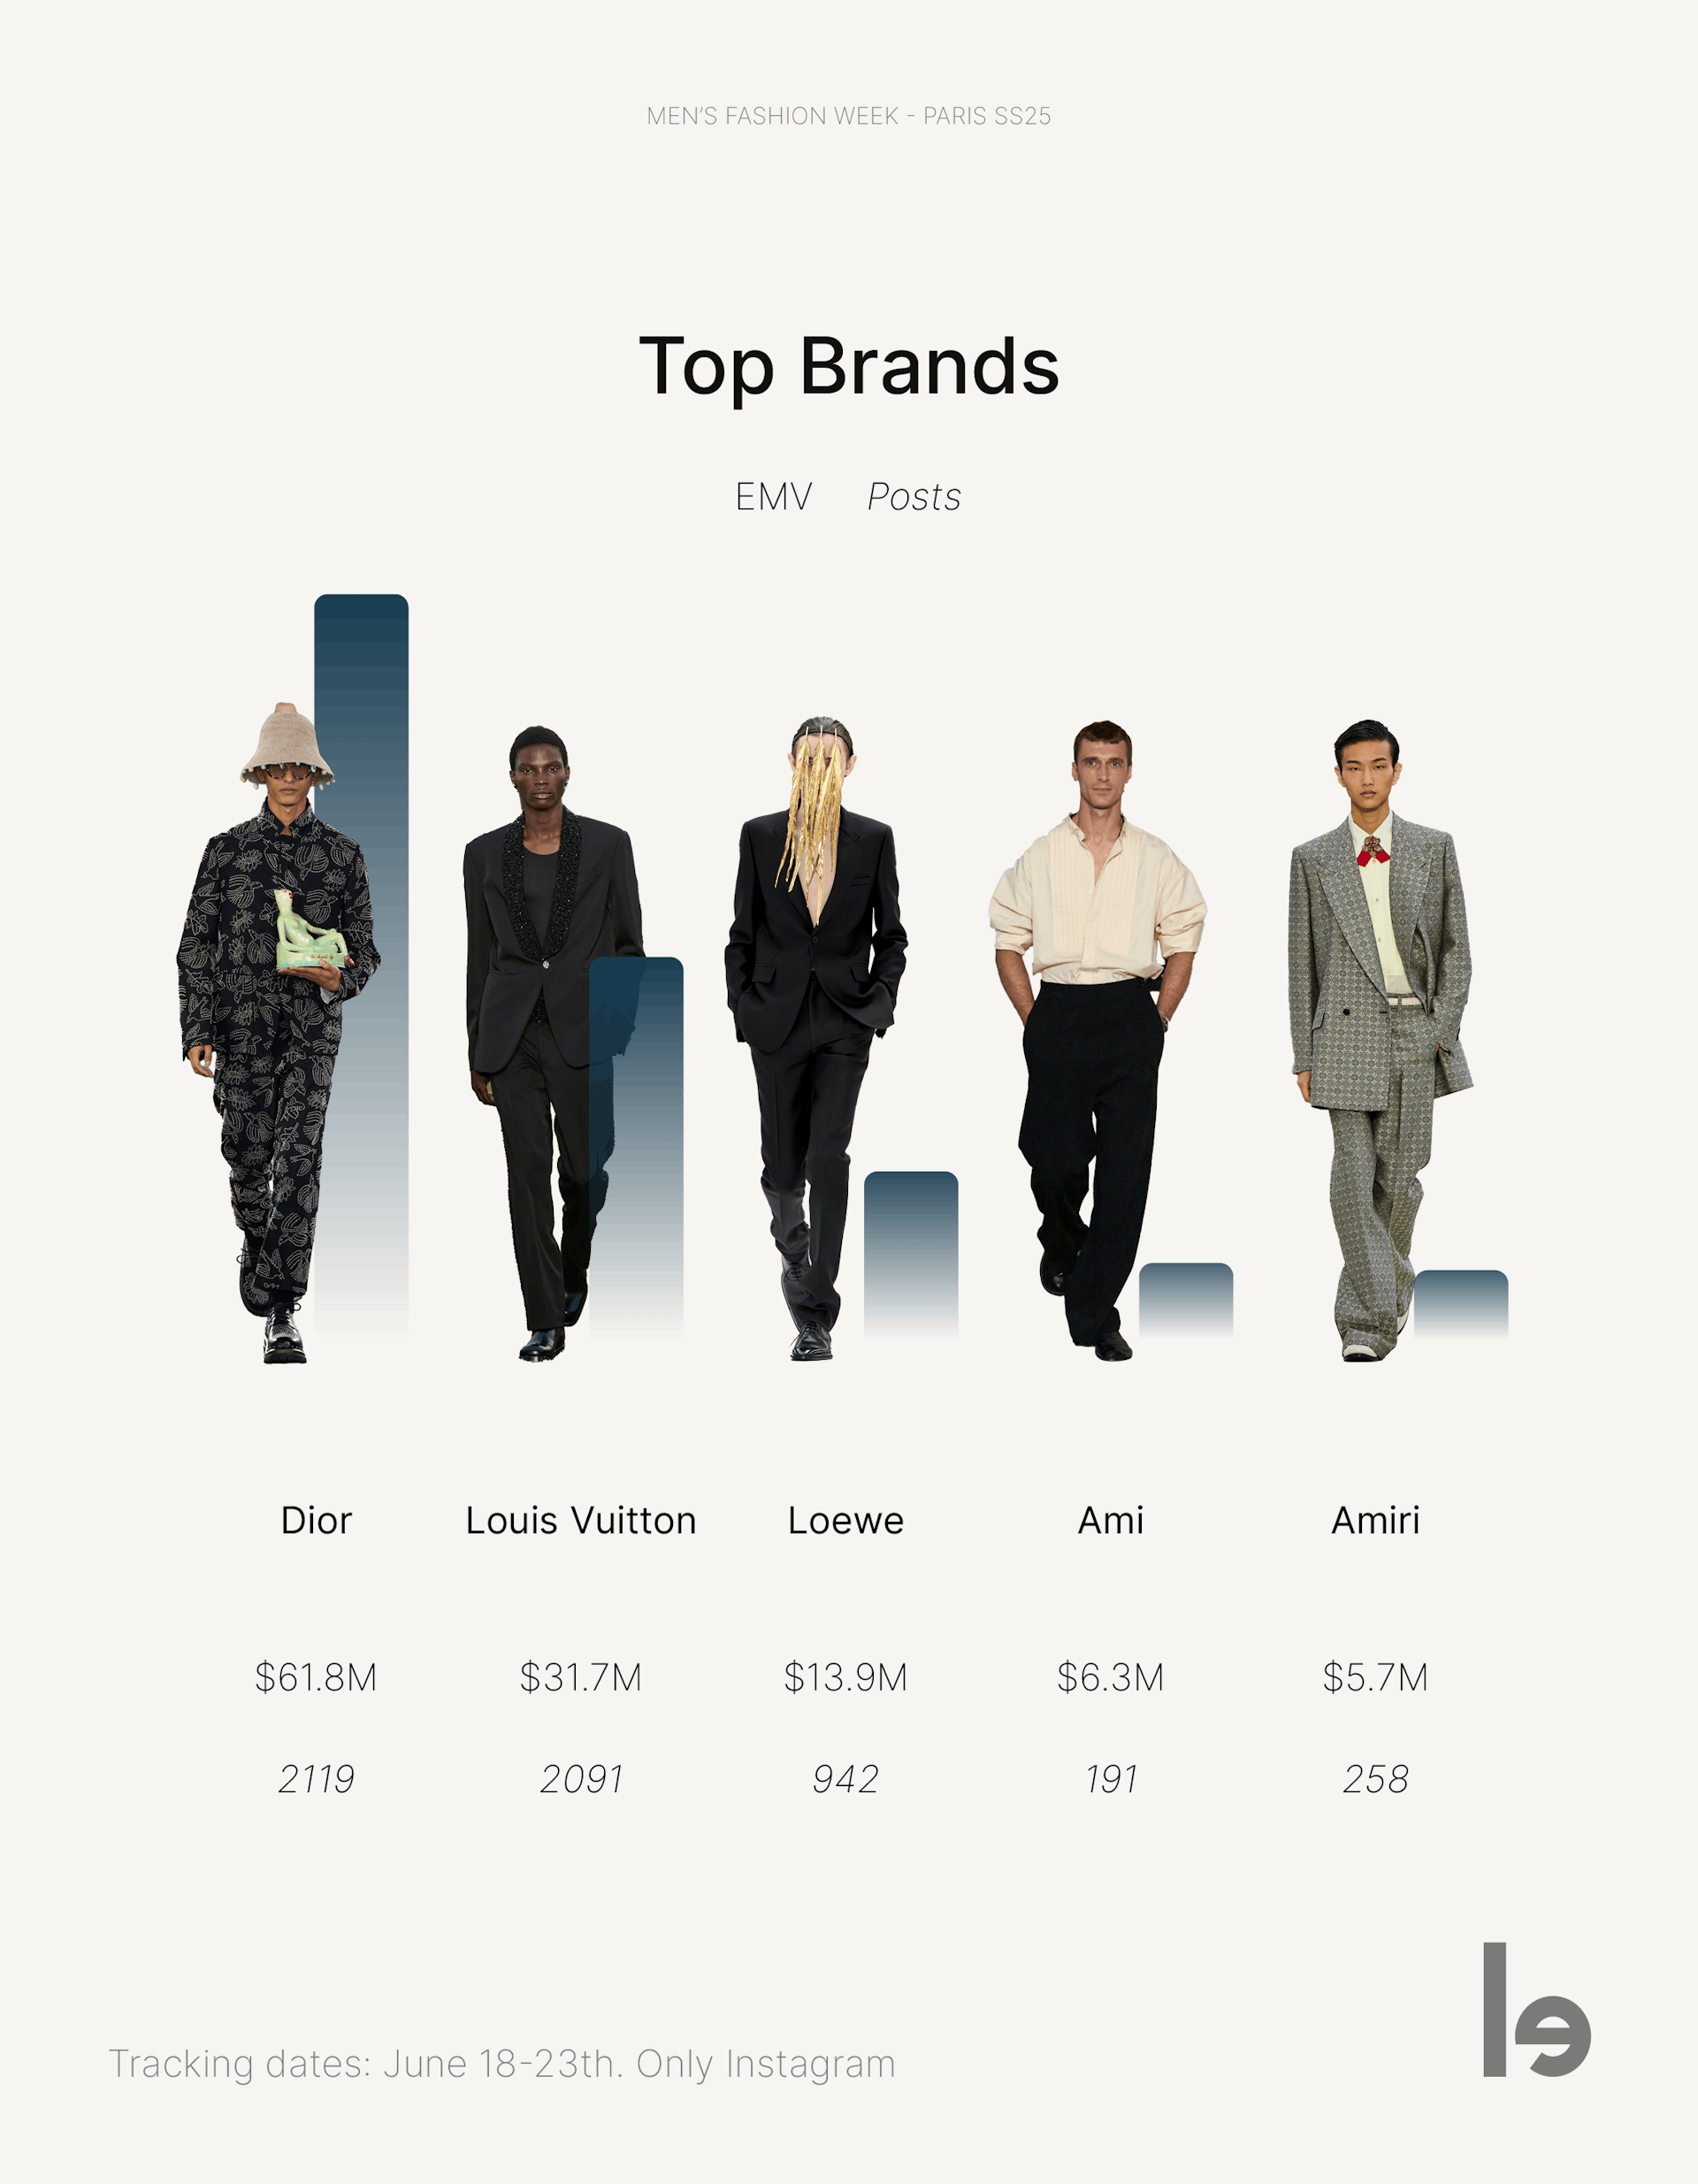 Top brands at Paris Men's Fashion Week SS25.